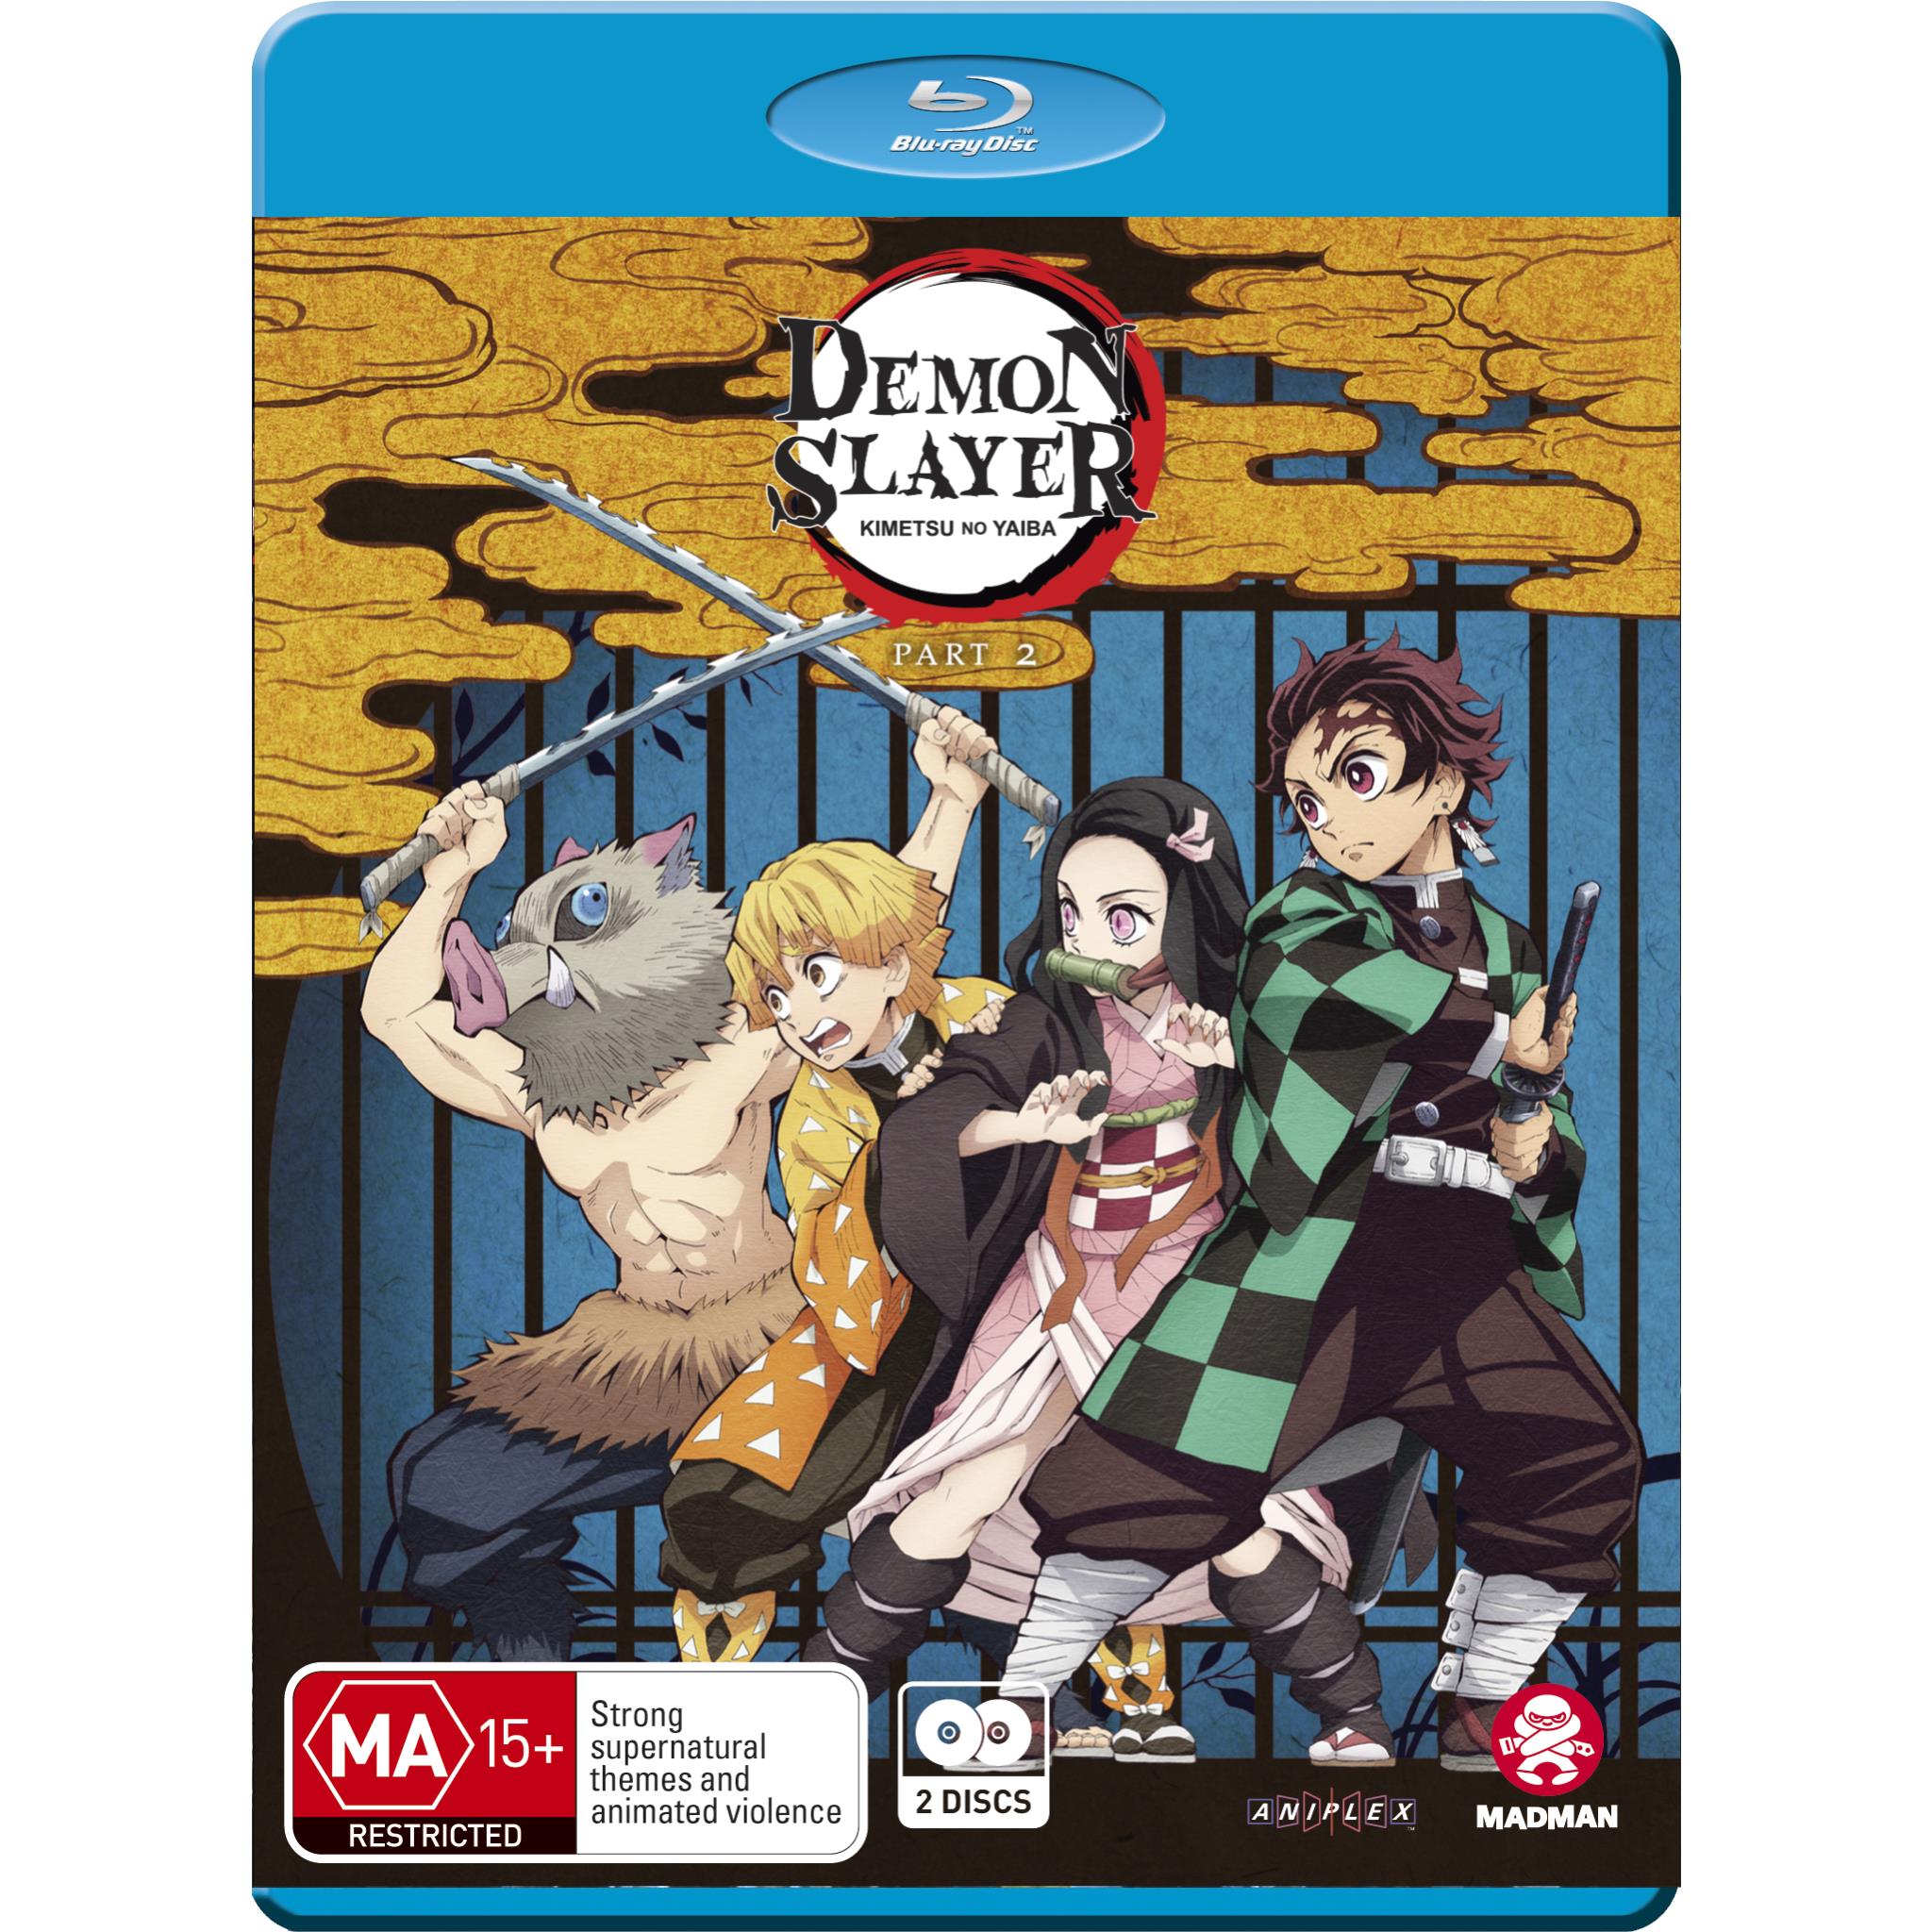 Demon Slayer: Kimetsu No Yaiba The Movie: Mugen Train (Blu-ray)